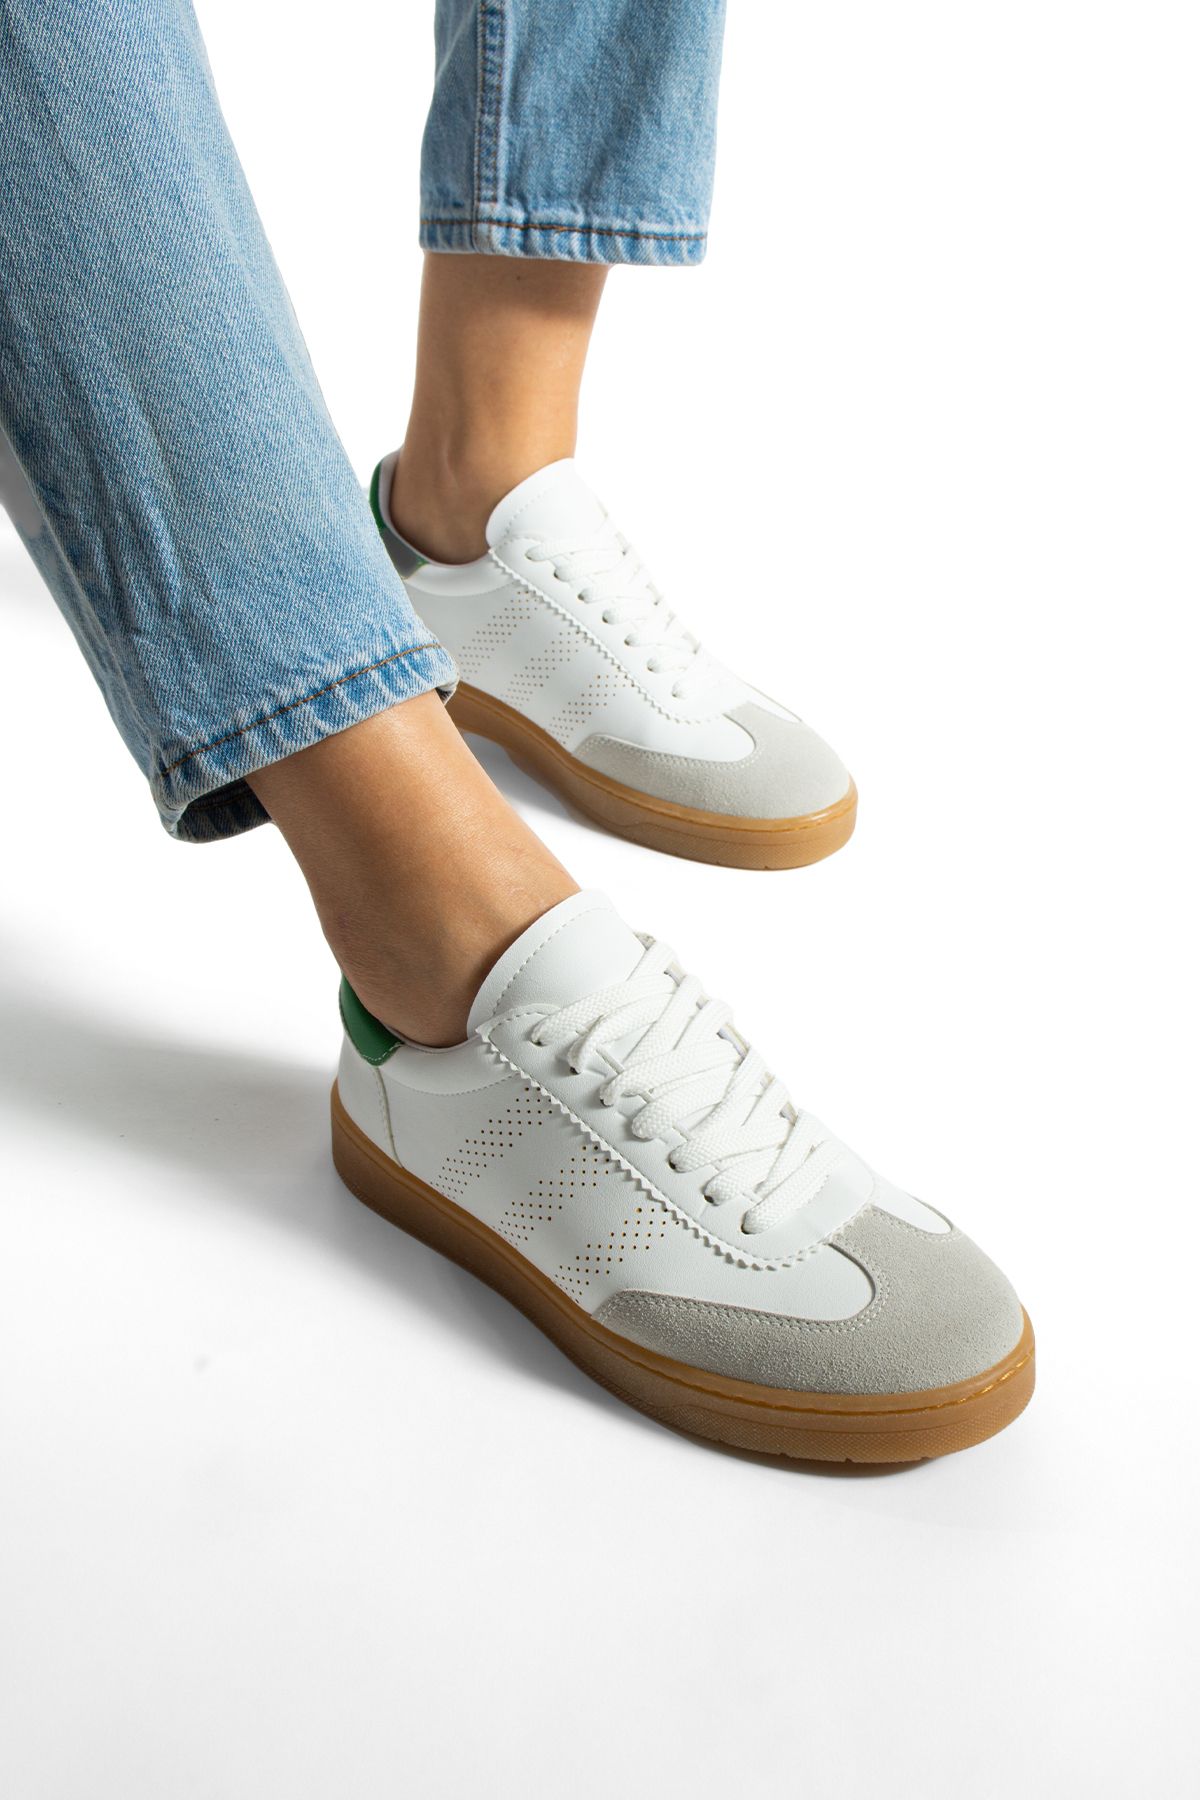 KOTAN Beyaz-Yeşil Kadın Logo Detaylı Spor Ayakkabı Kadın Sneakers